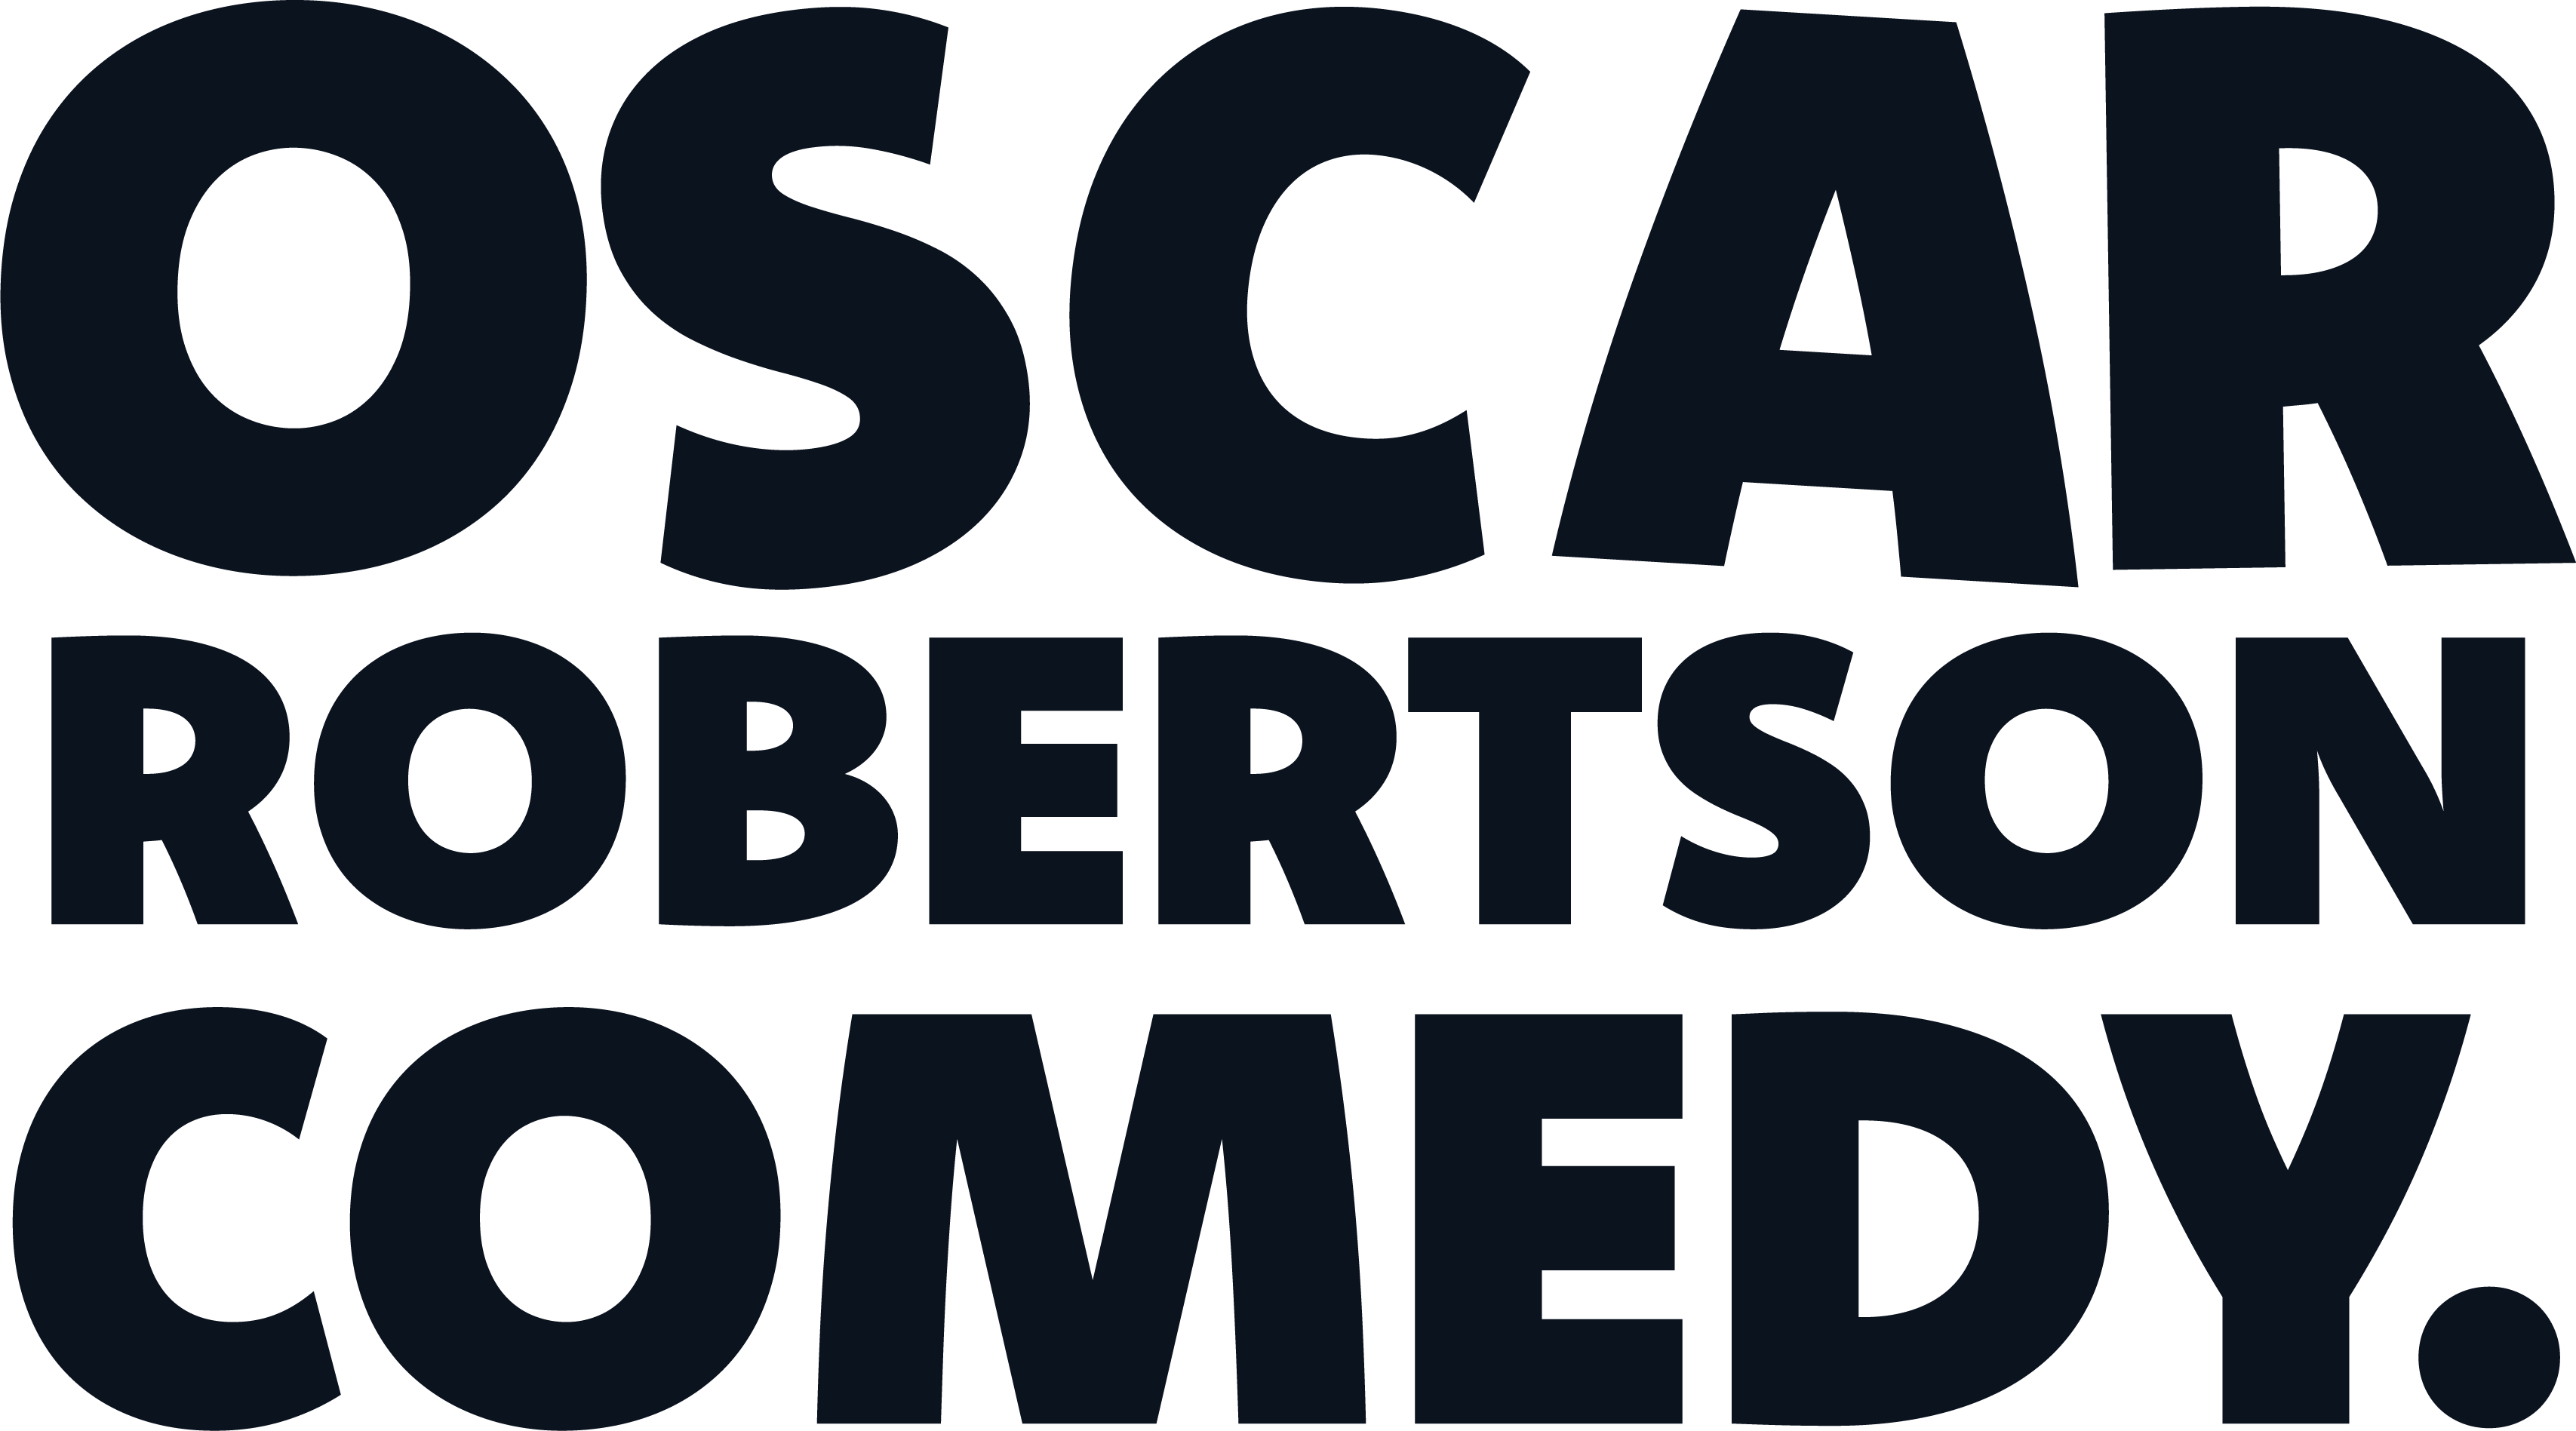 Oscar Robertson Comedy